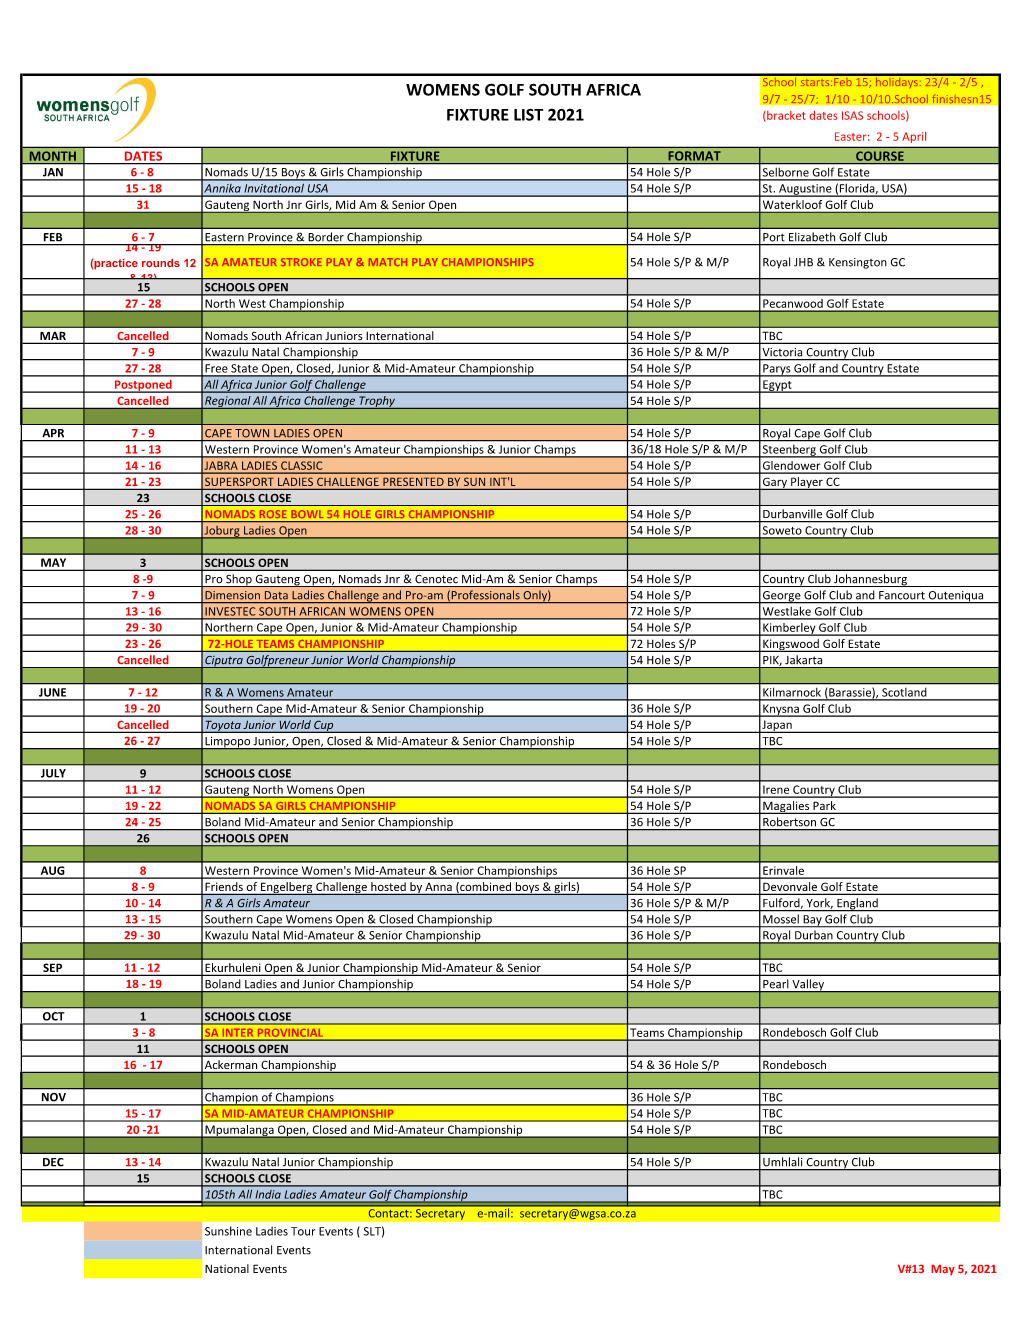 2021 WGSA Fixture List